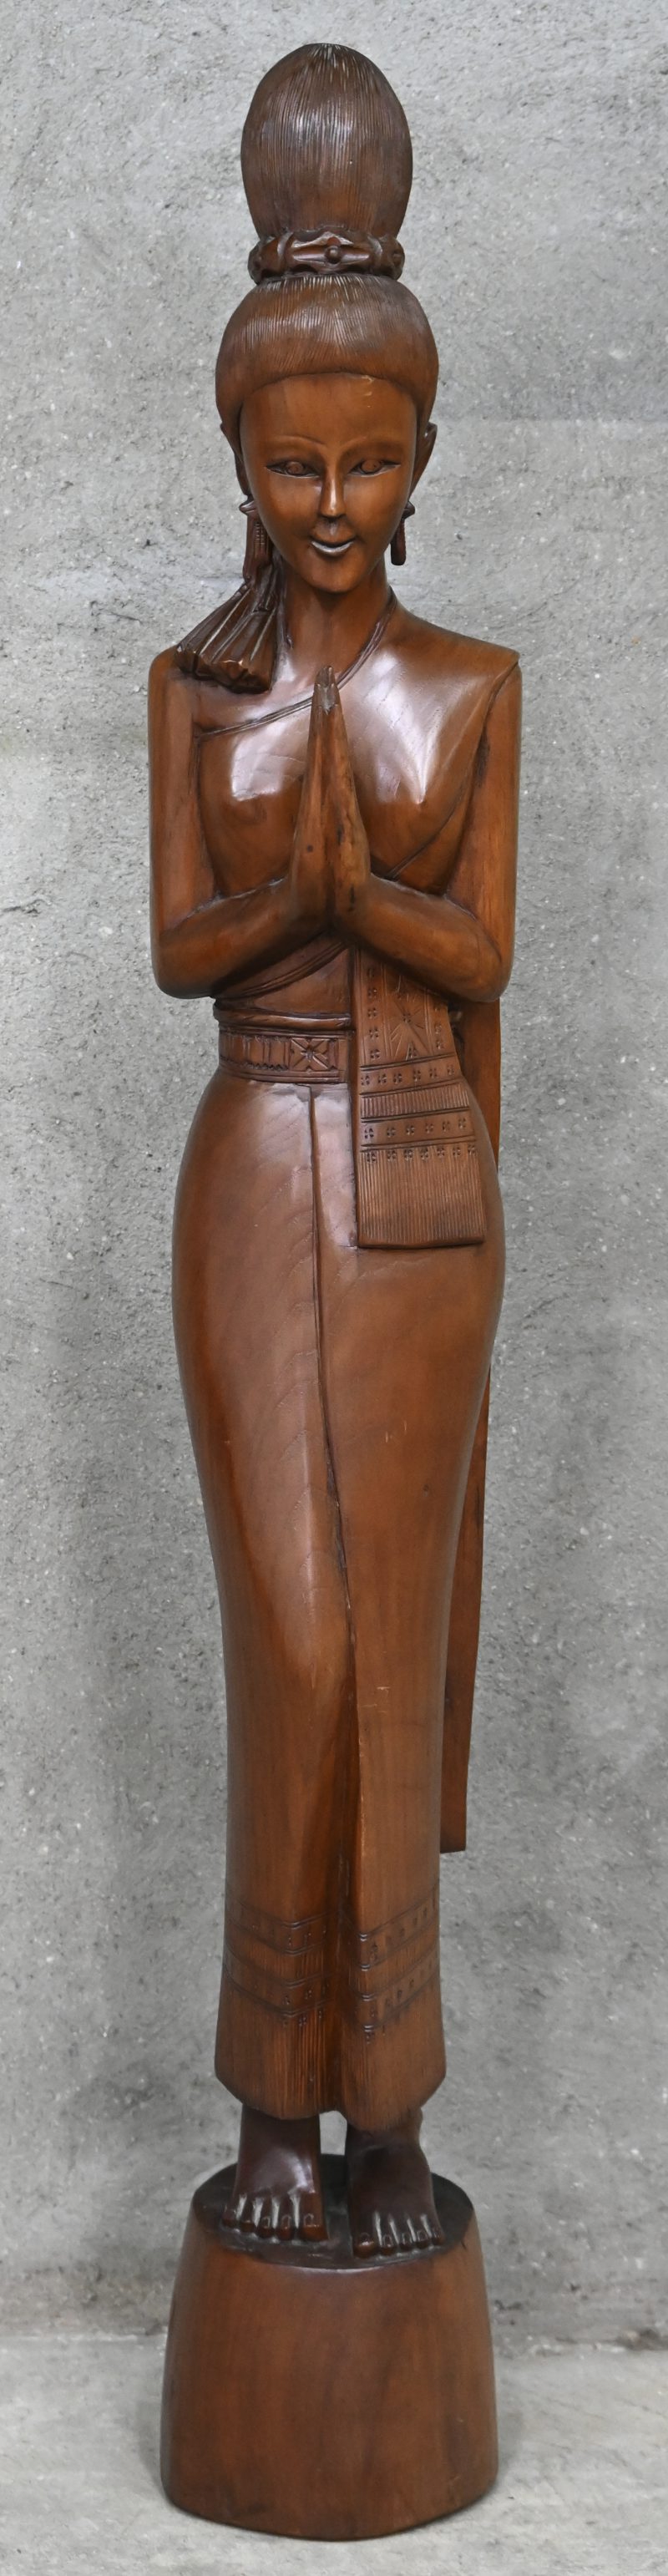 Een houten beeld van een Thaise vrouw.